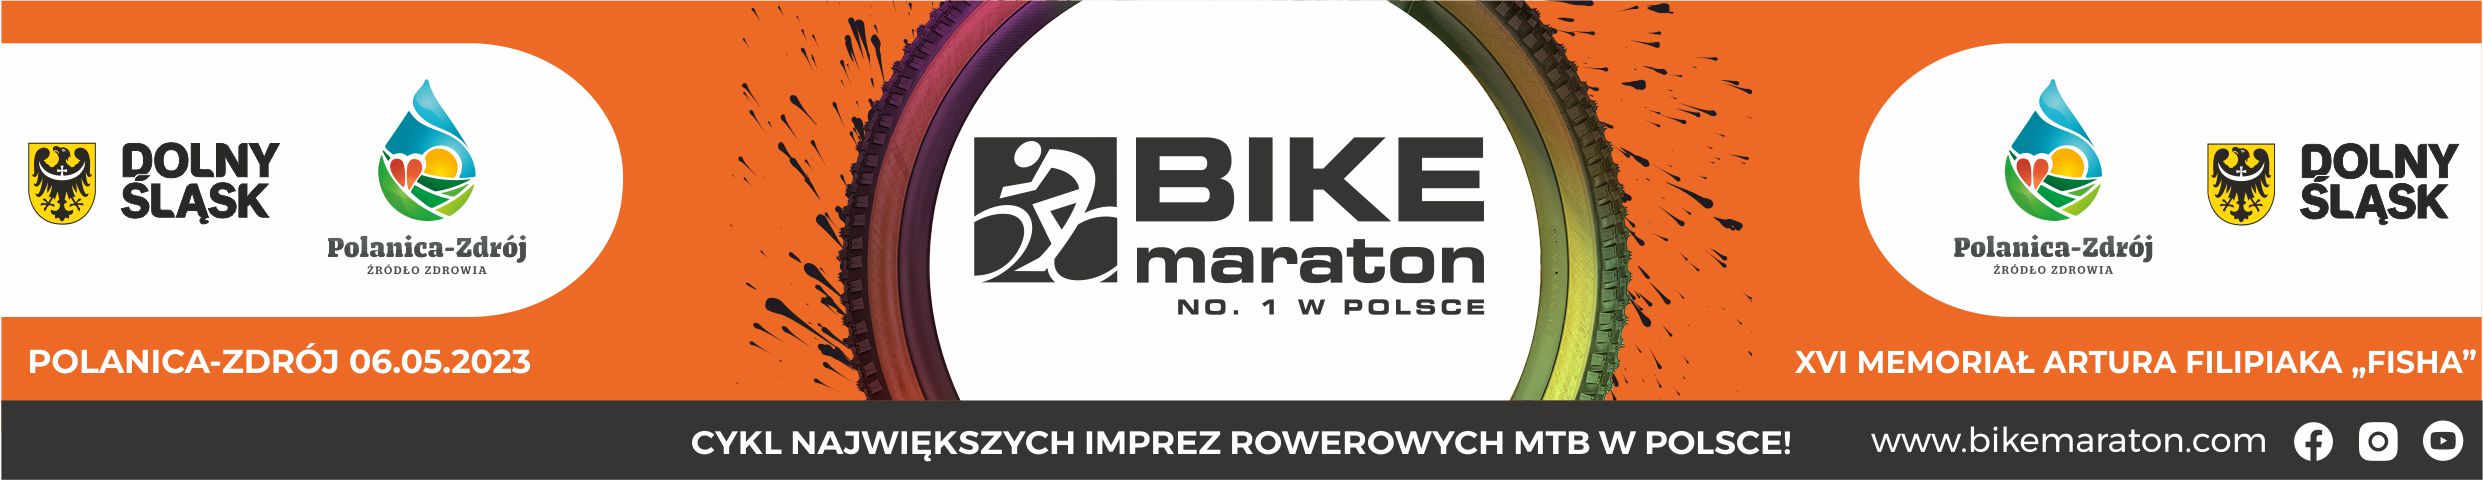 Polanica-Zdrój i Bike Maraton 2023